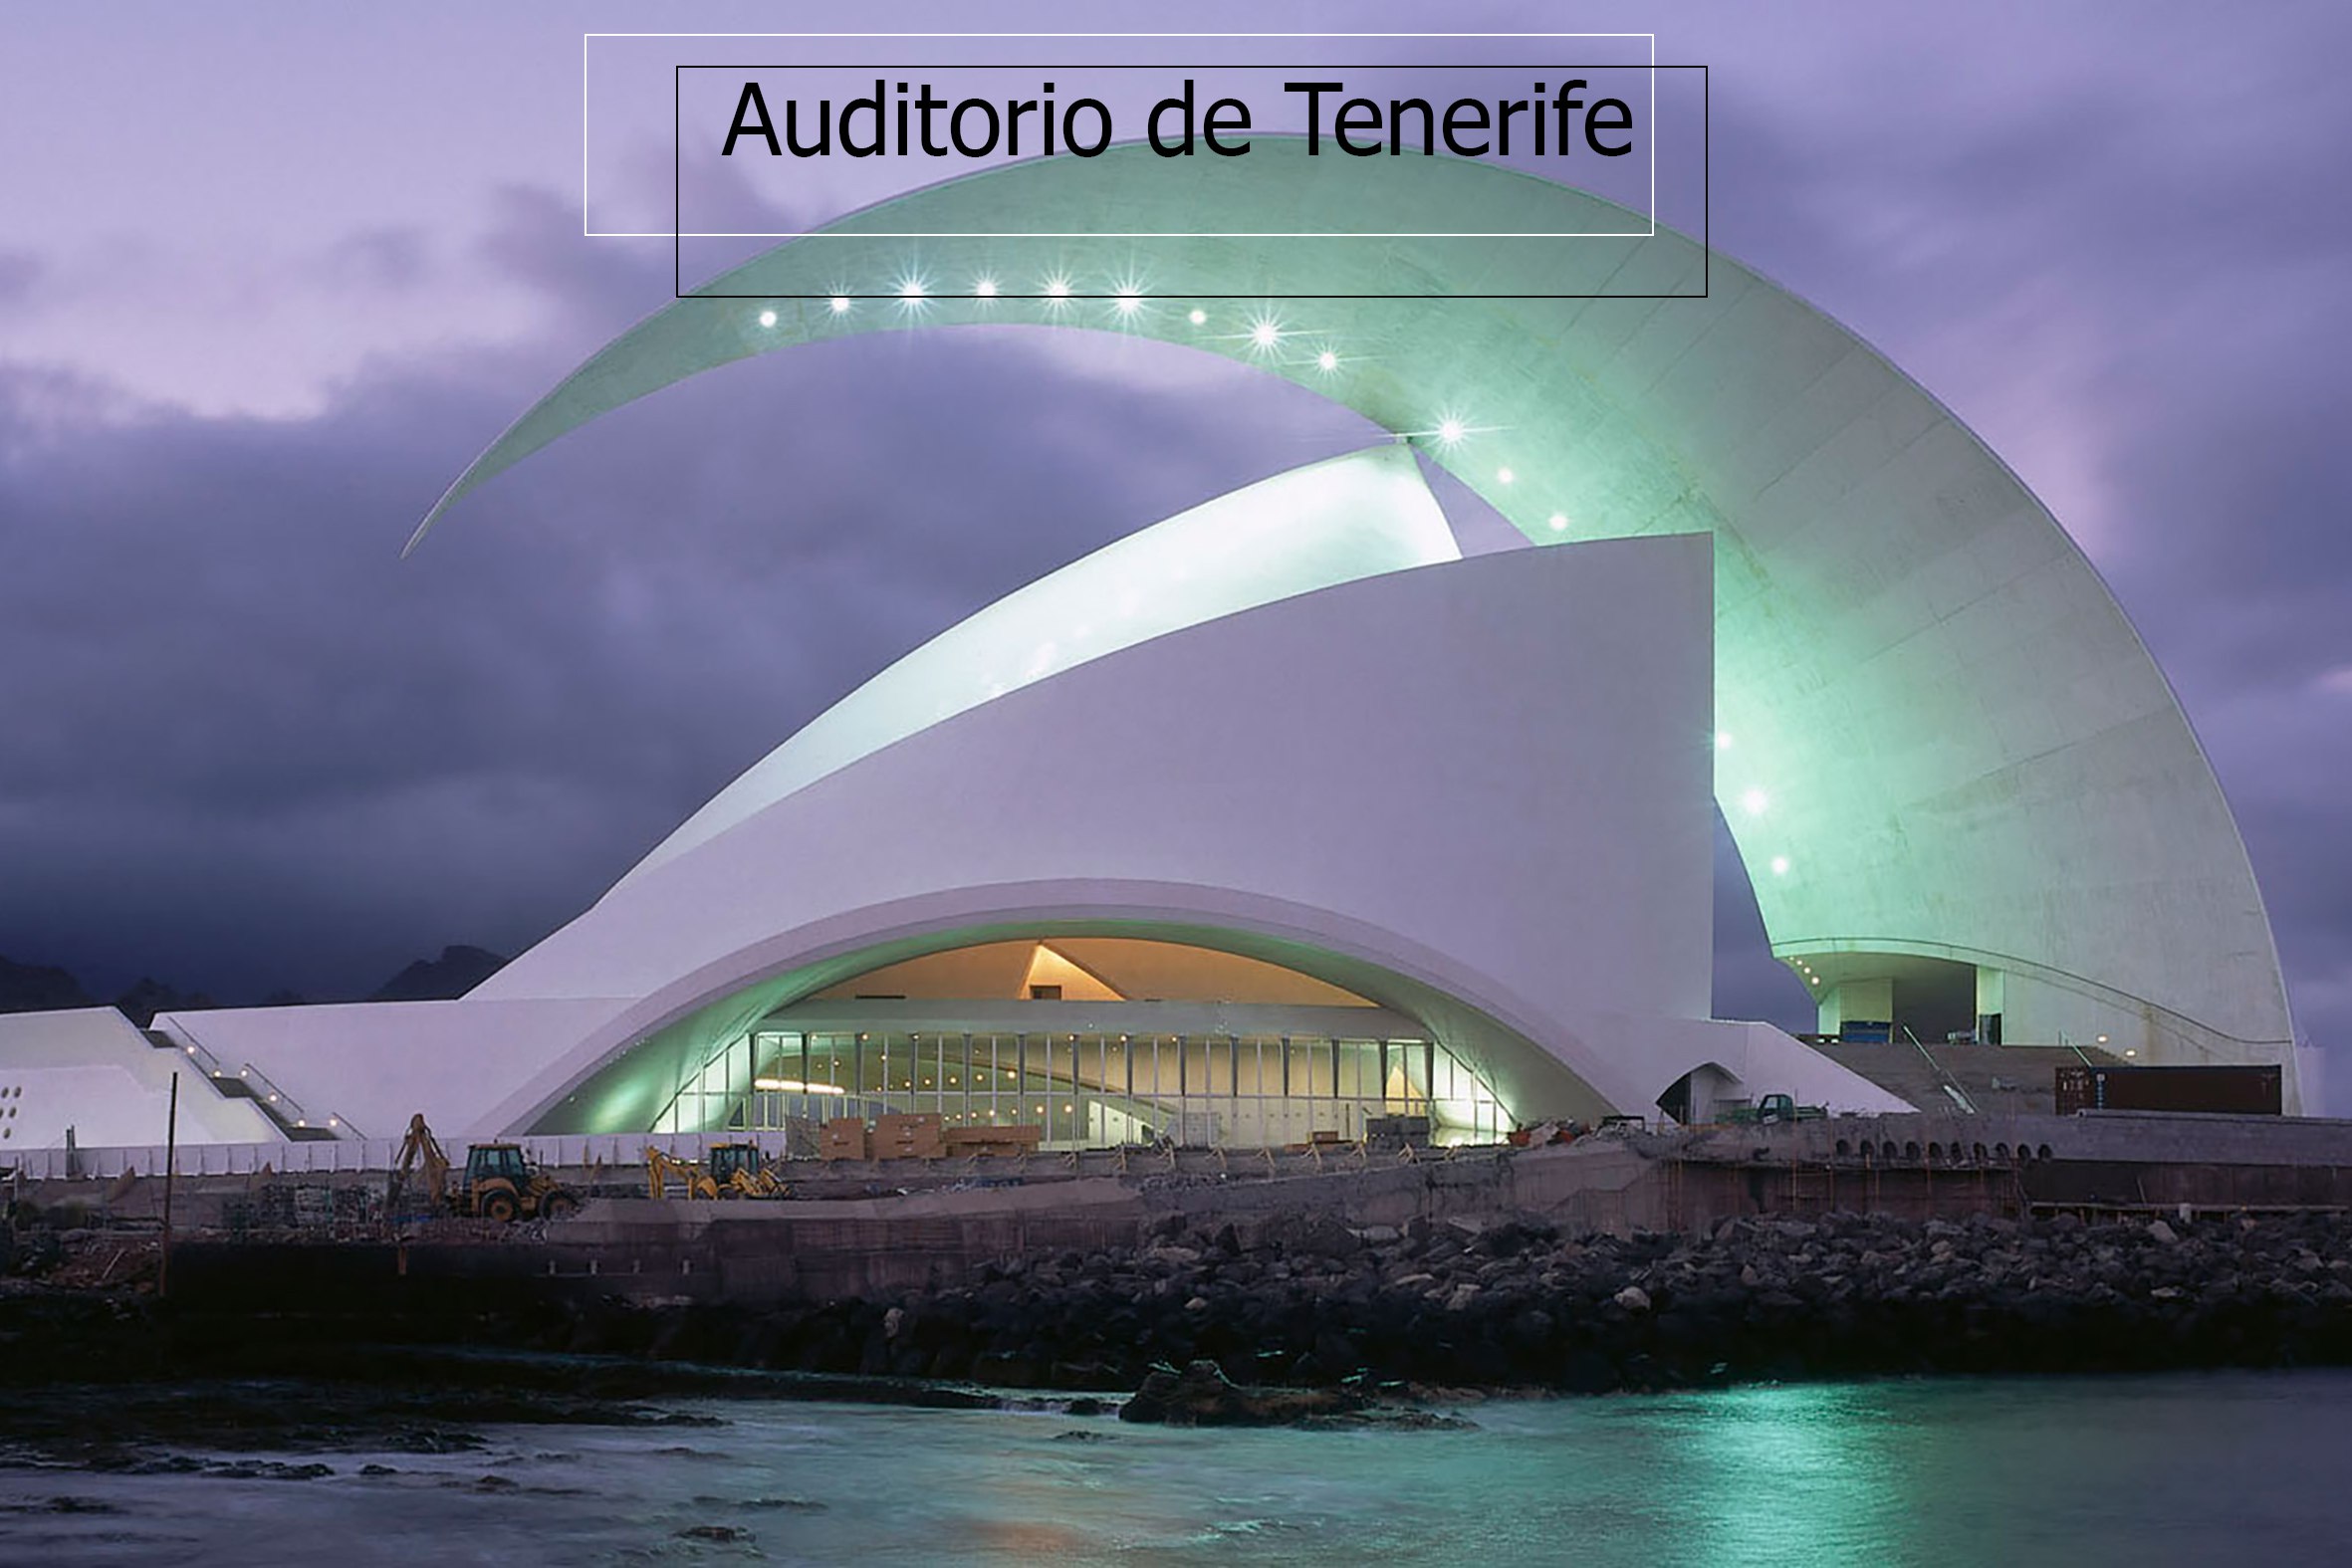 Архитектура зданий театров. Аудиторио-де-Тенерифе Сантьяго Калатрава. Концертный зал Аудиторио-де-Тенерифе, Испания. Концертный зал Аудиторио-де-Тен. Аудиторио-де-Тенерифе в Санта-Крус.